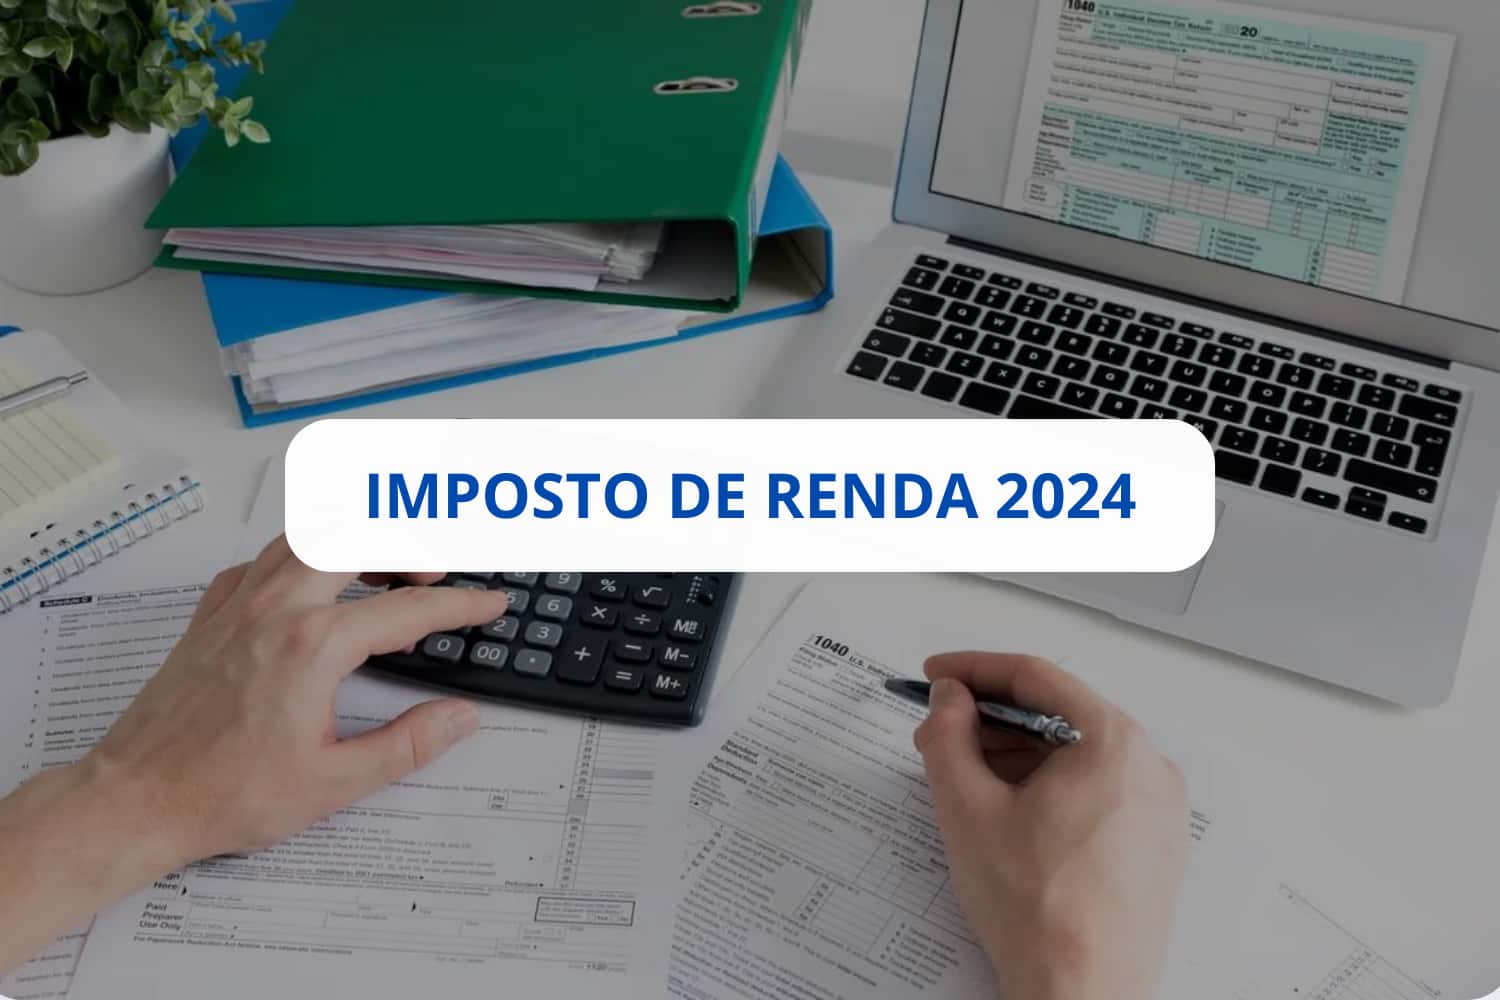 Confira Tudo Sobre O Imposto De Renda 2024 E Evite Problemas Com O Fisco! - Escritório de Contabilidade em São Paulo | Revicont Contabilidade